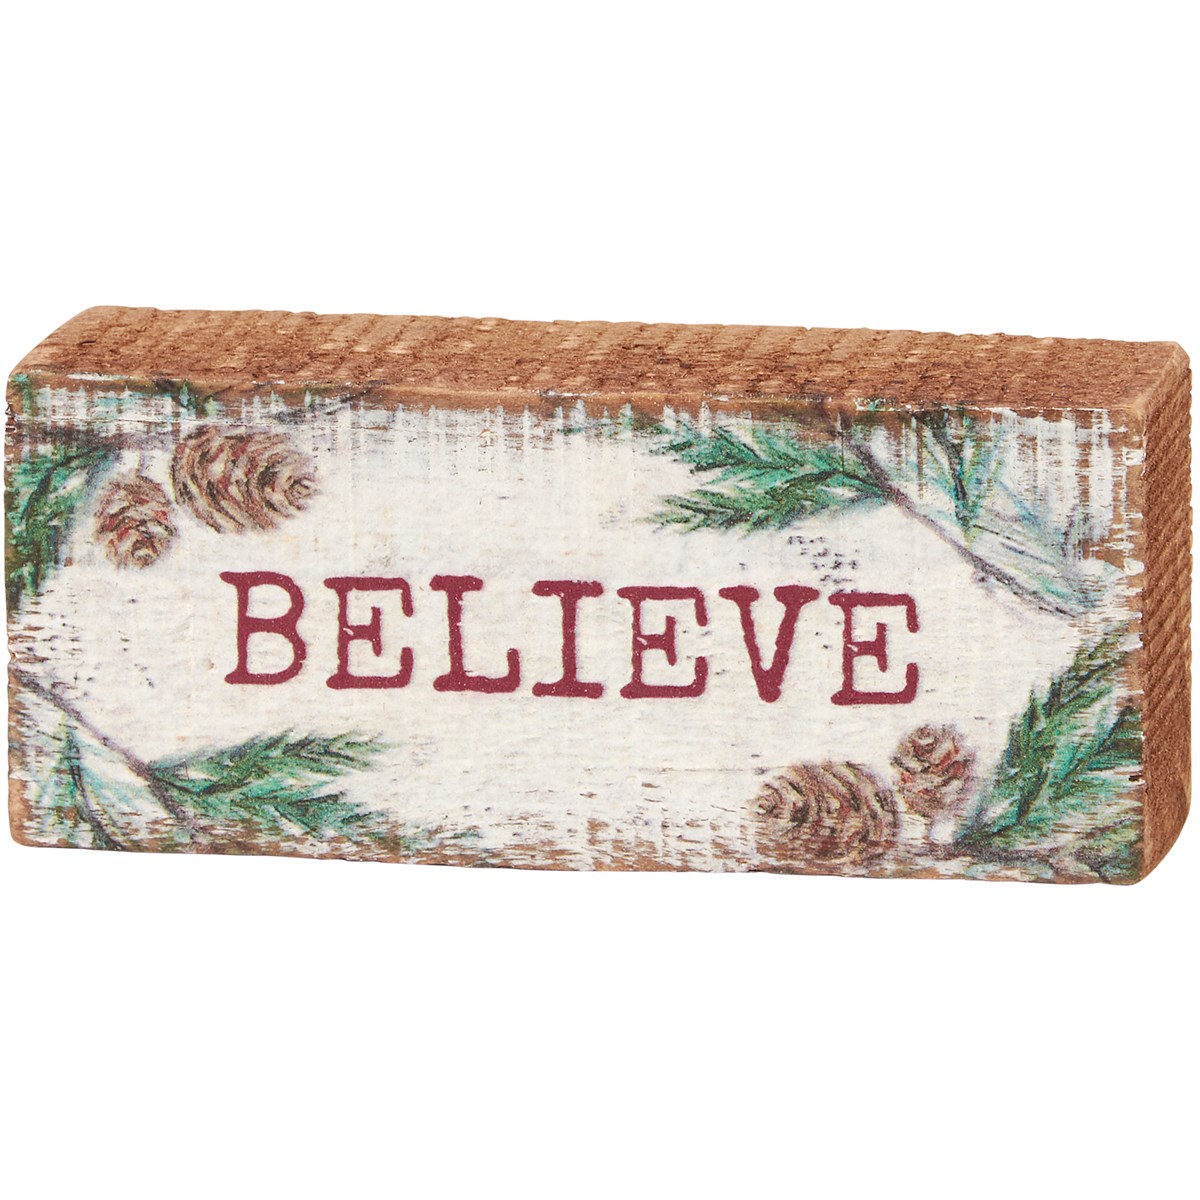 Believe Block Sign - Wood